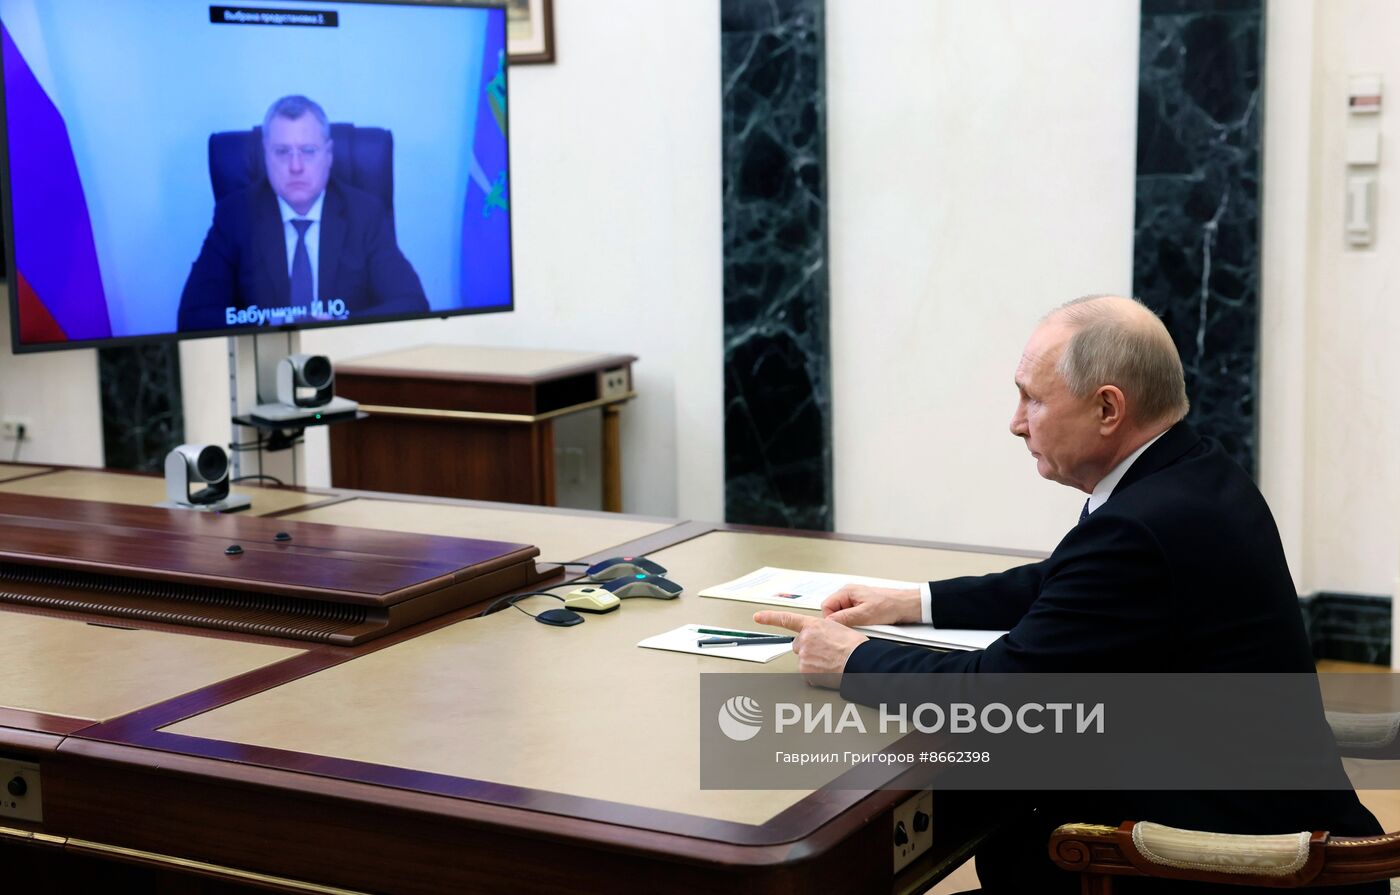 Президент Владимир Путин провел встречу c губернатором Астраханской области Игорем Бабушкиным